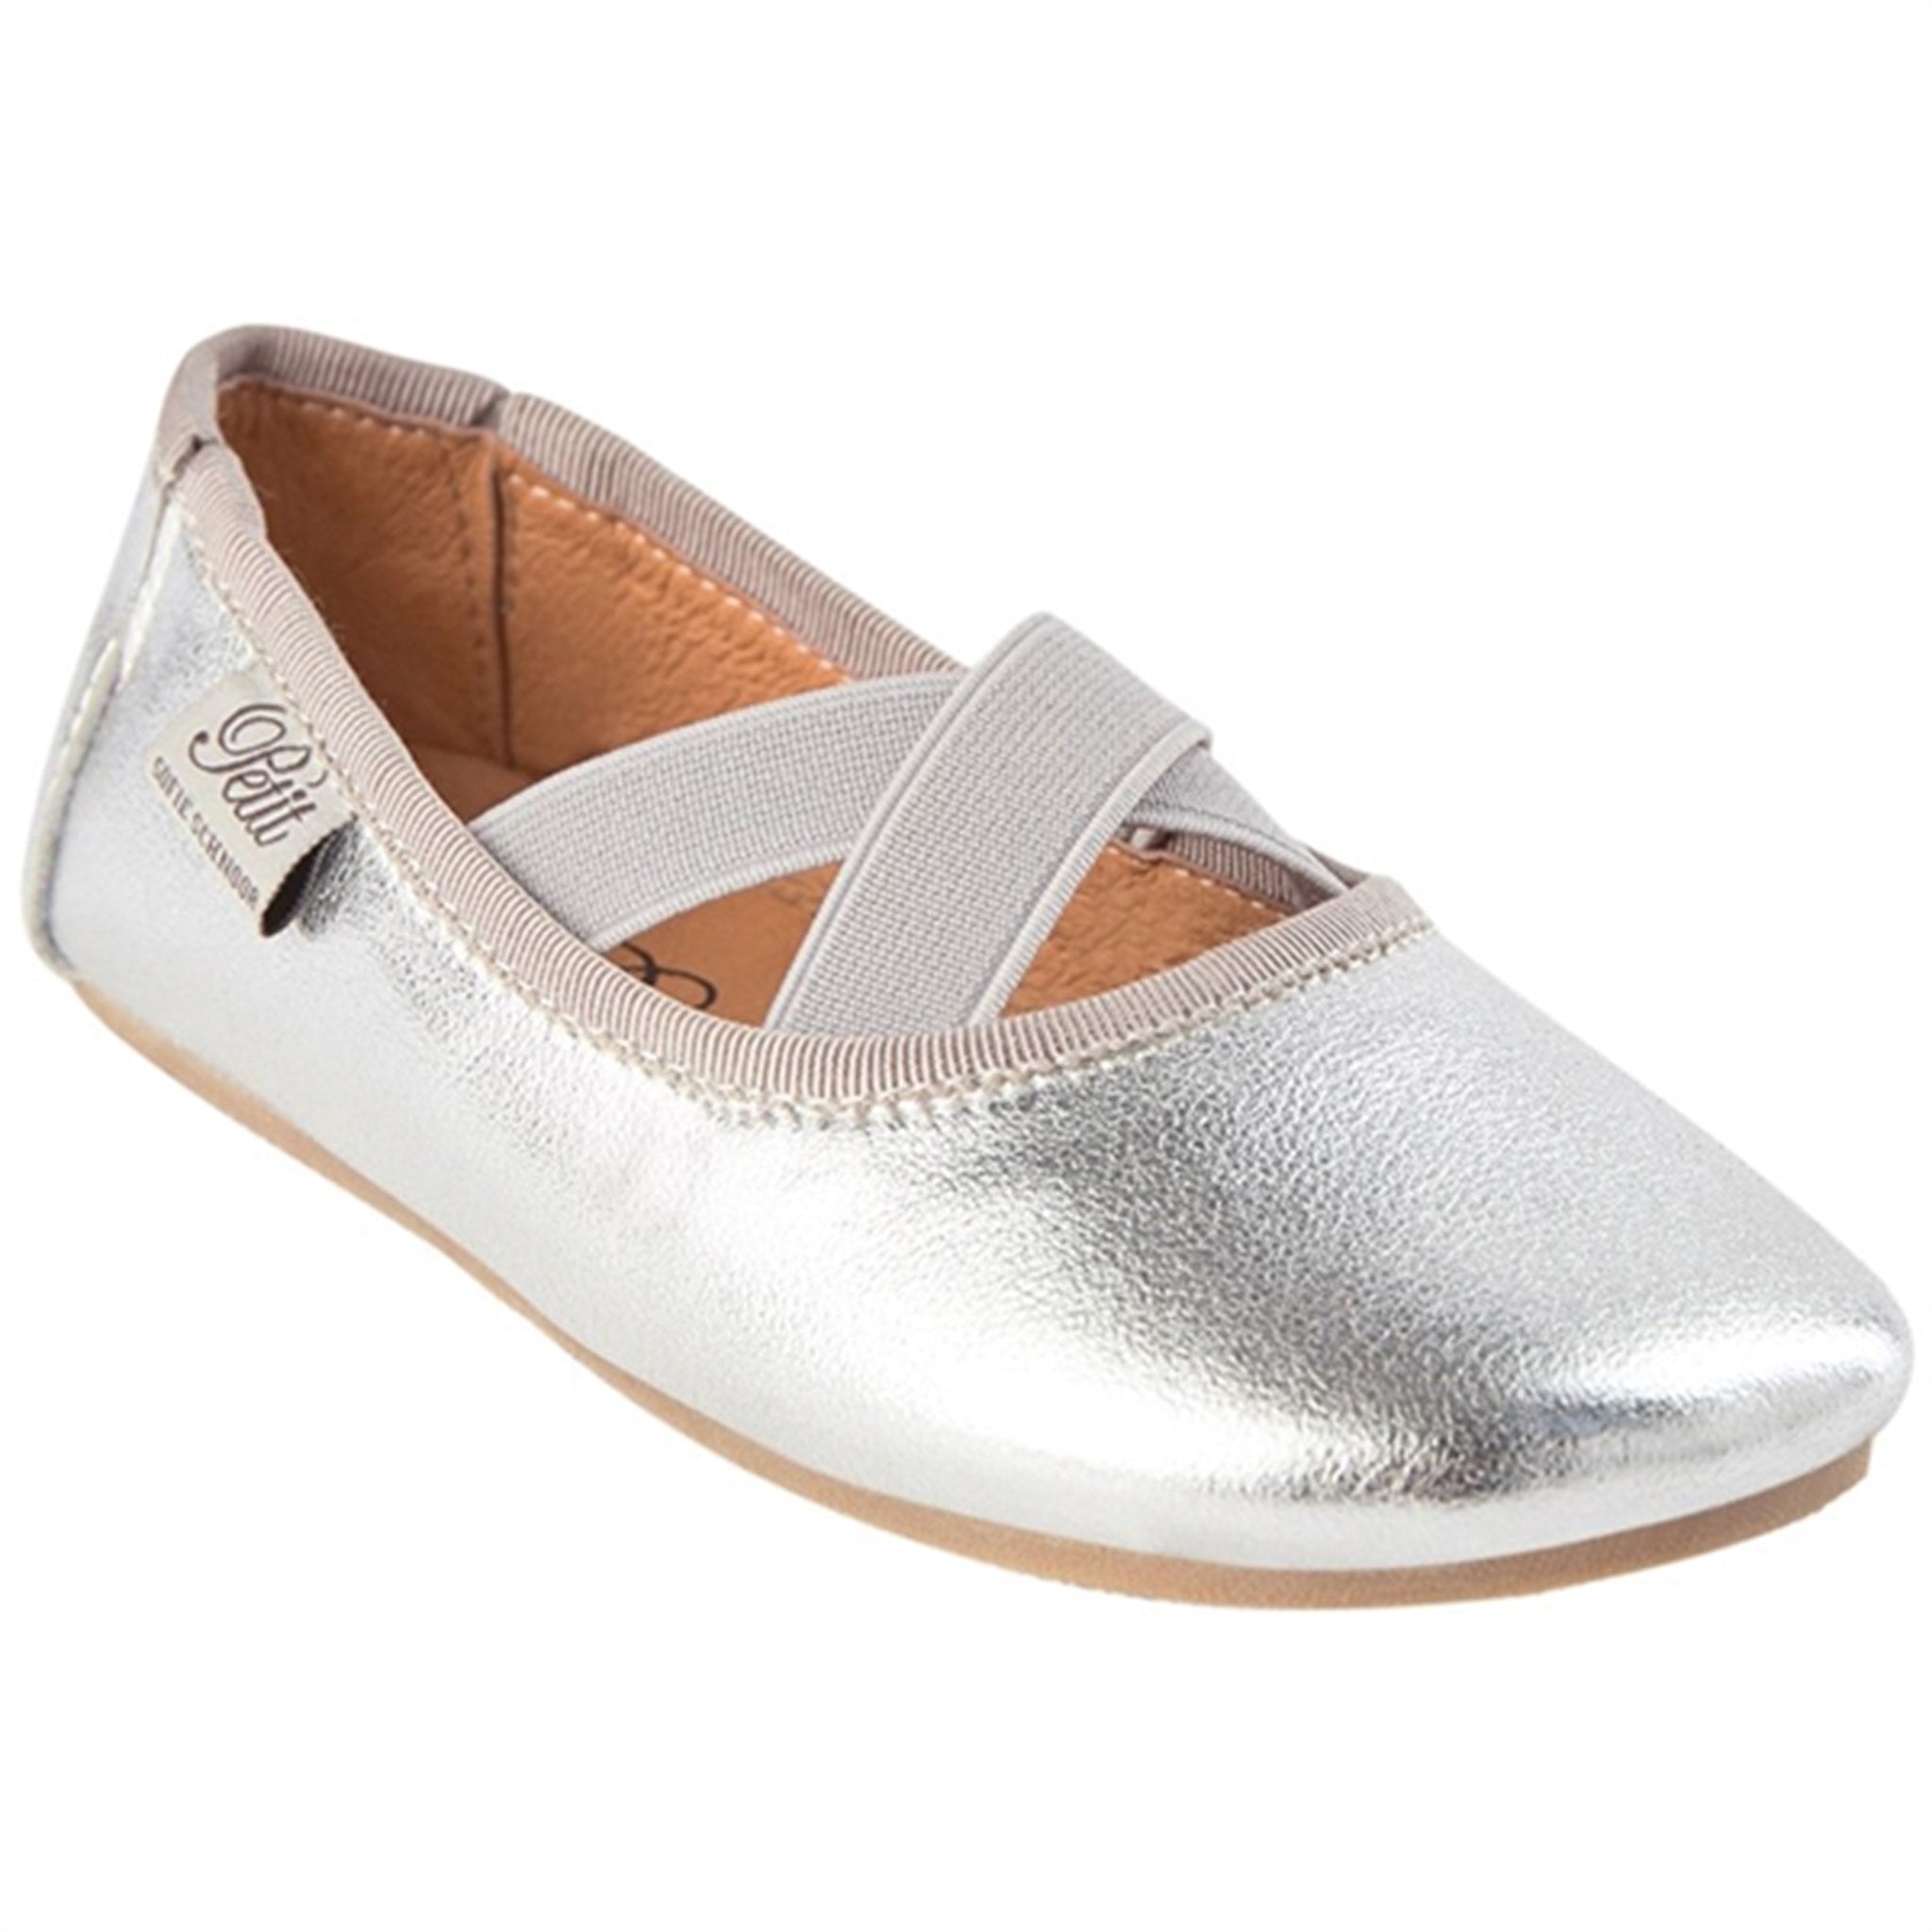 Sofie Schnoor Indoor Shoes Silver 5